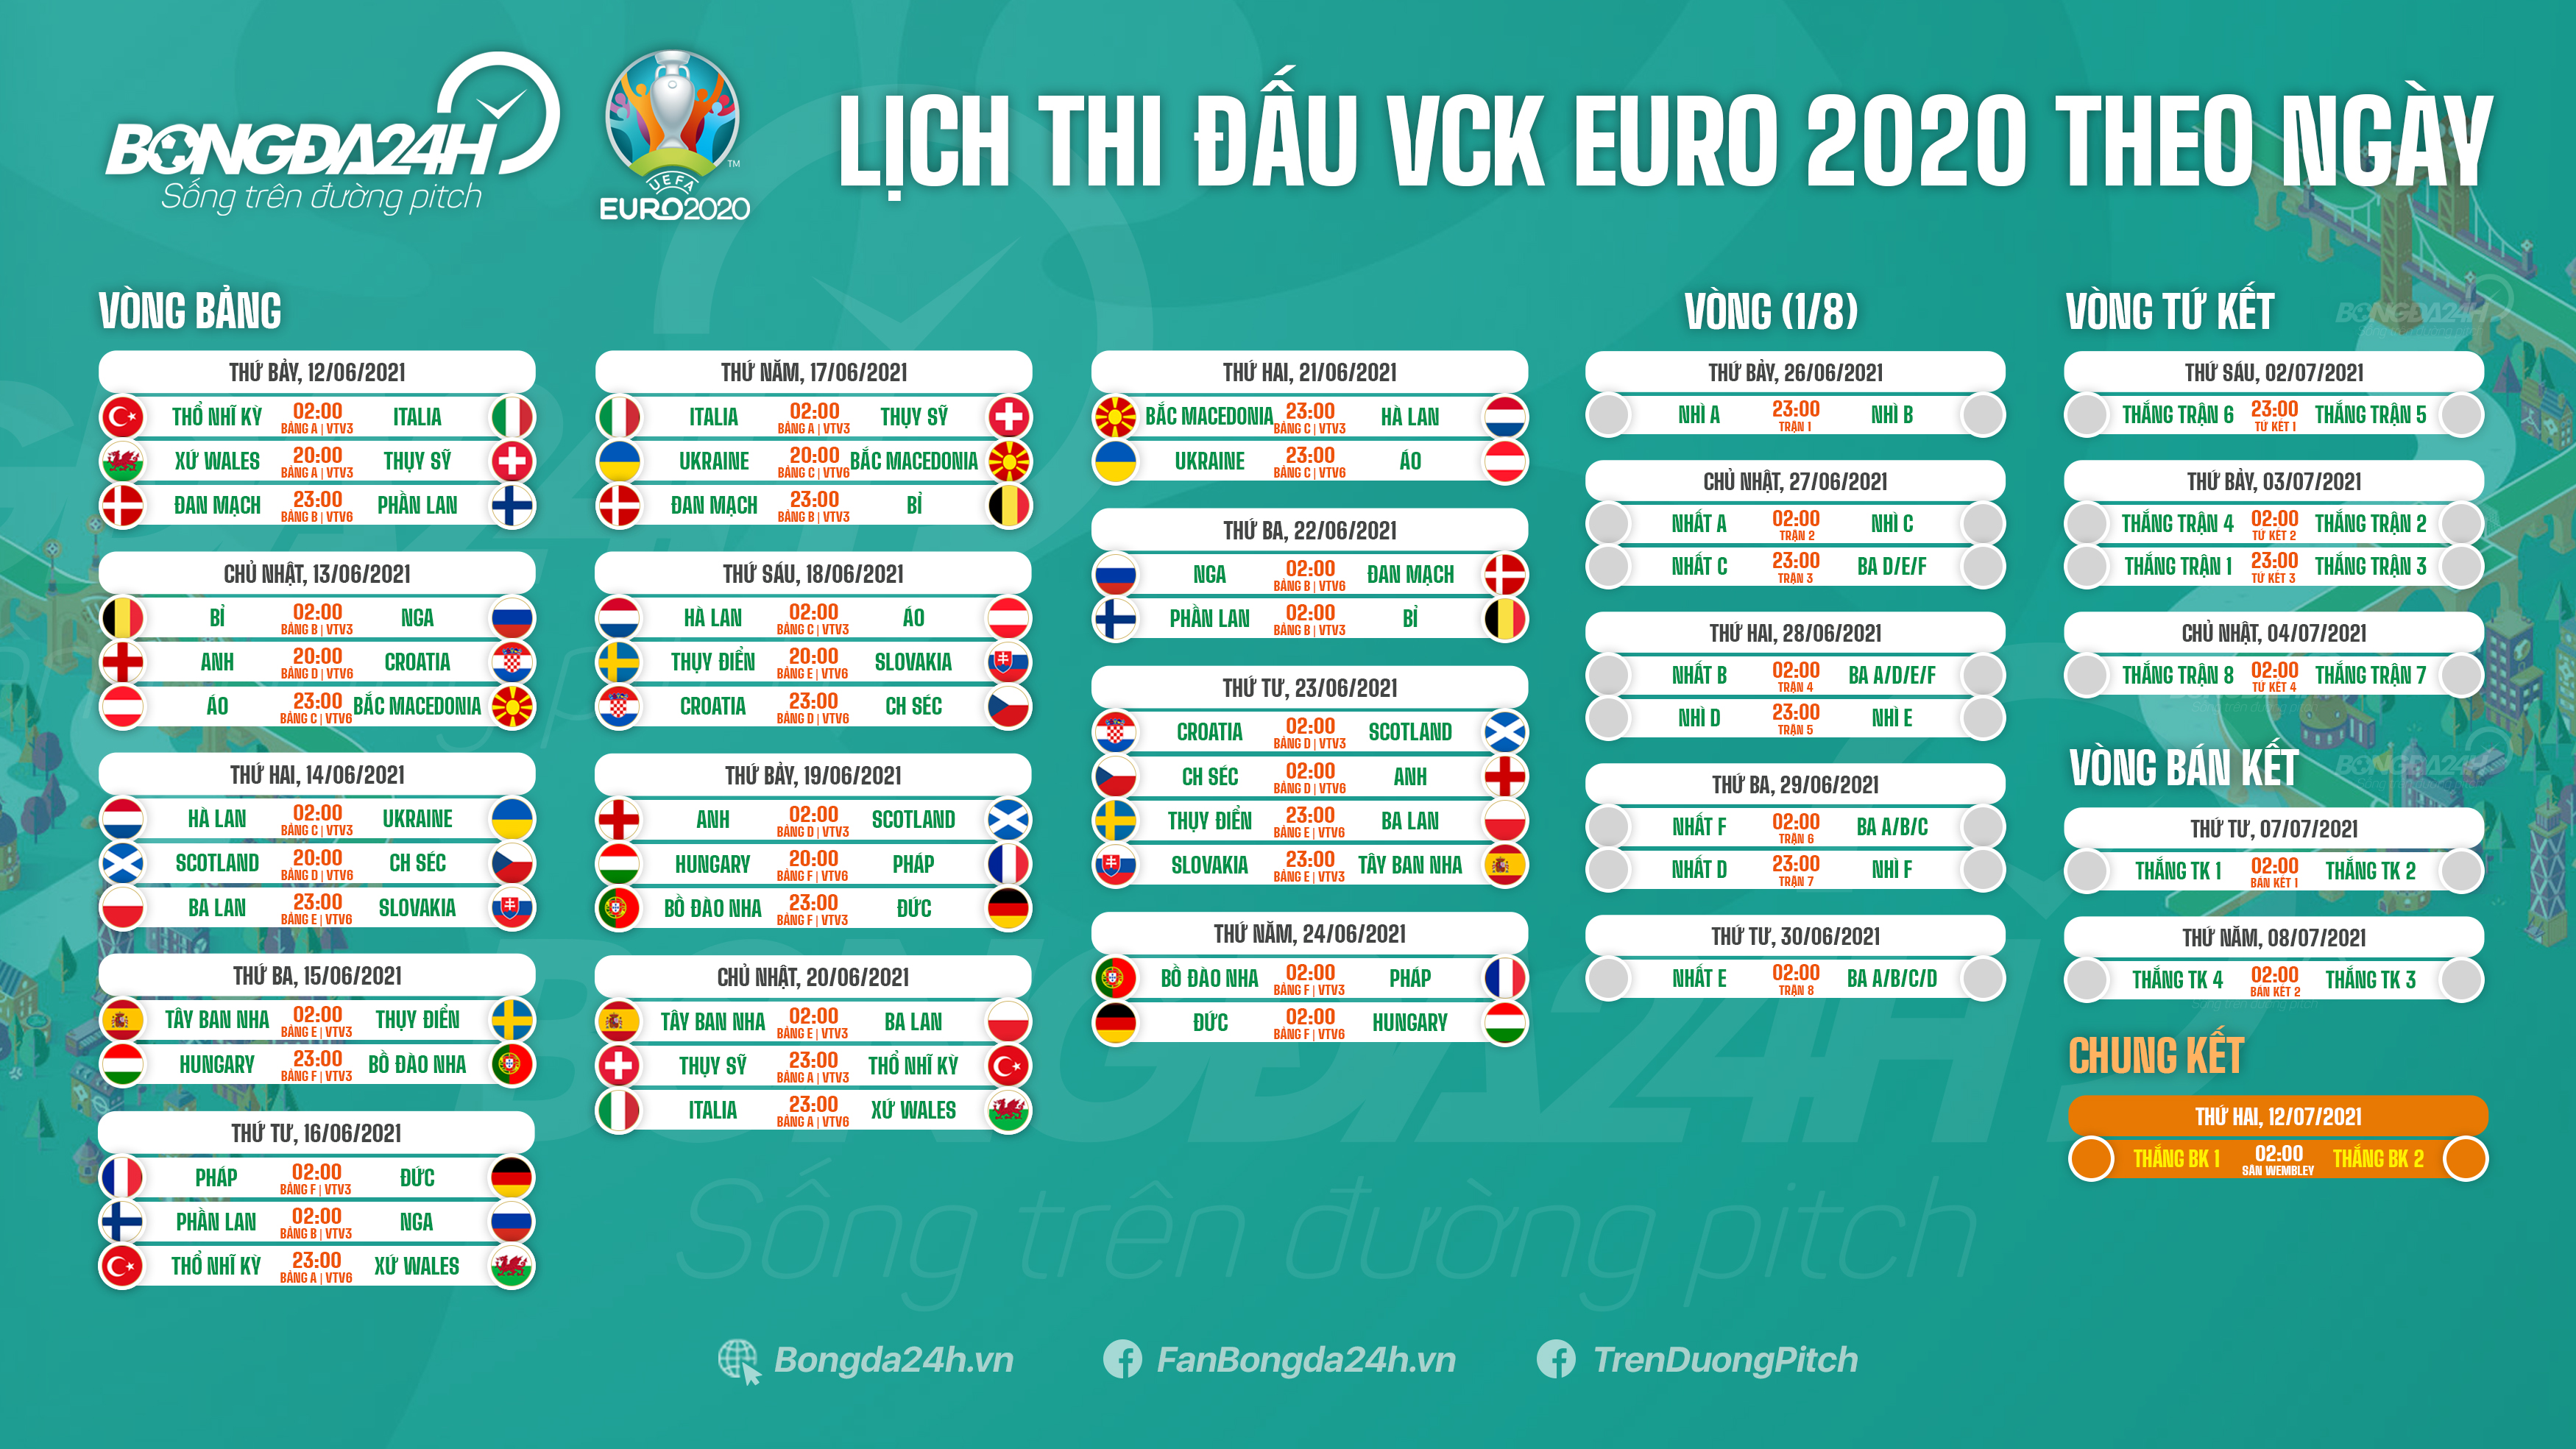 Download bộ ảnh: Lịch thi đấu Euro 2020-Truyền hình trực tiếp Euro VTV6 VTV3 chung kết euro 2021 diễn ra ở đâu